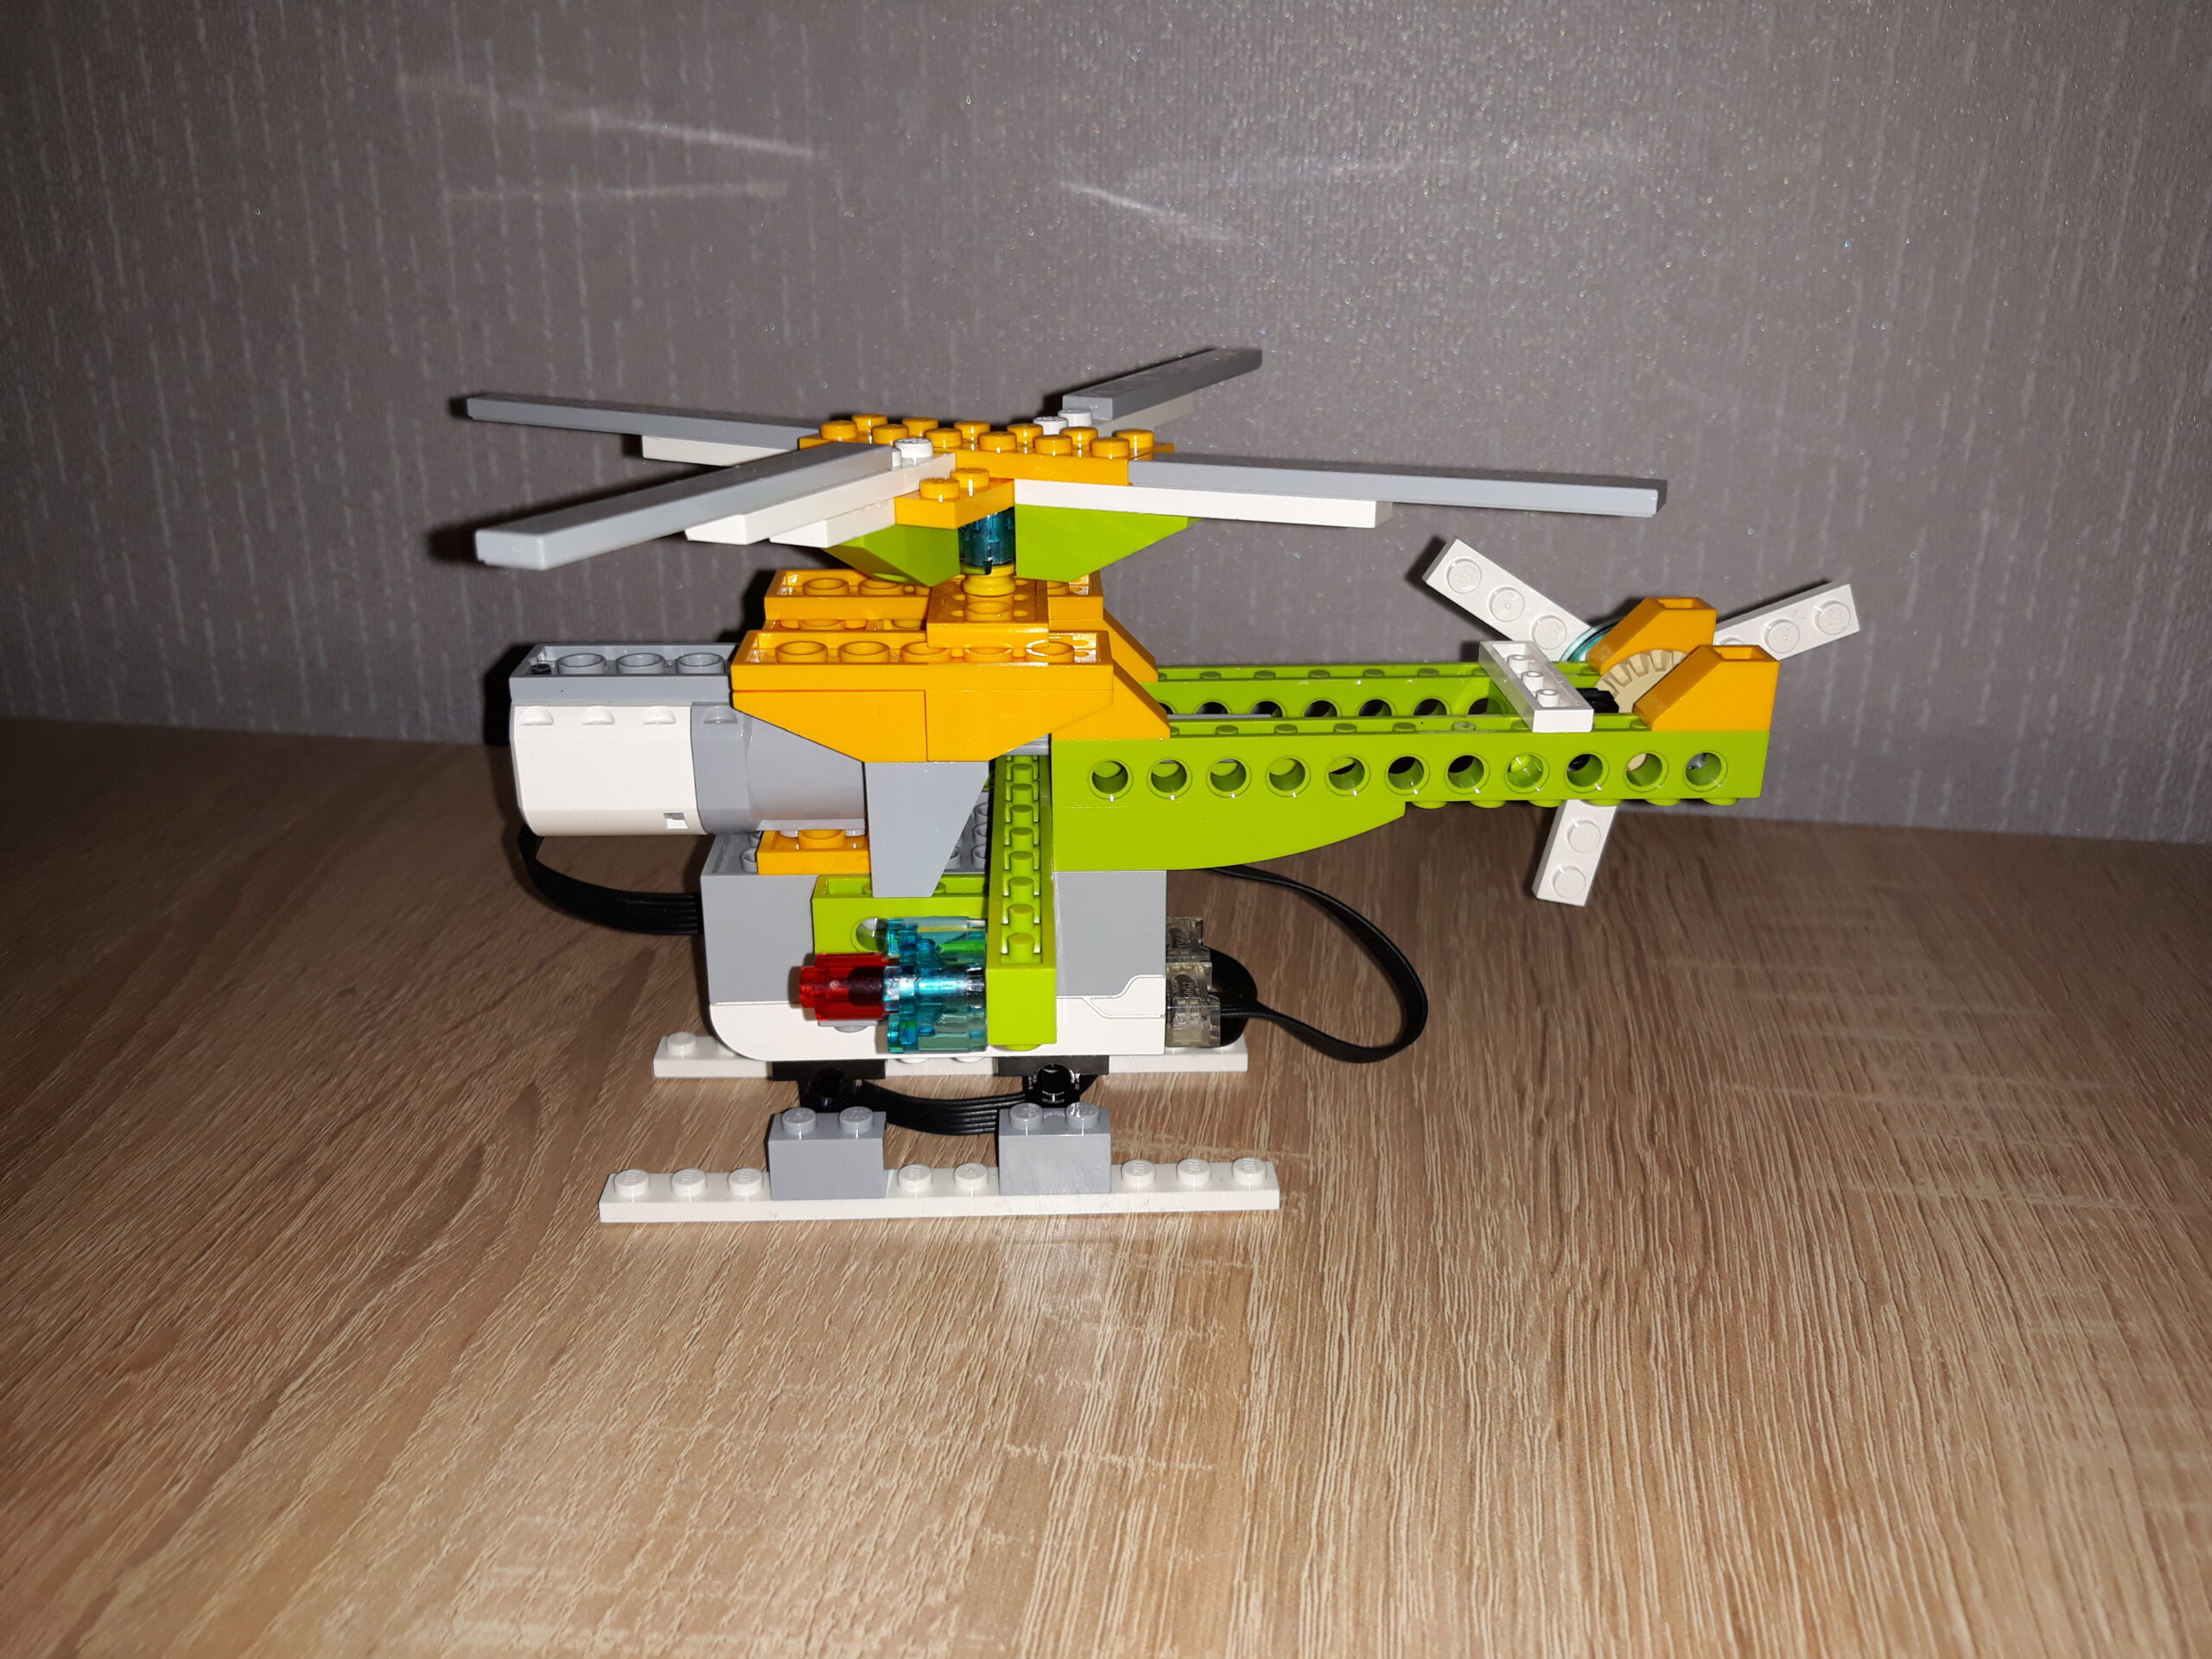 Скачать бесплатно инструкцию по сборке из набора LEGO Education WeDo 2.0 Вертолетик